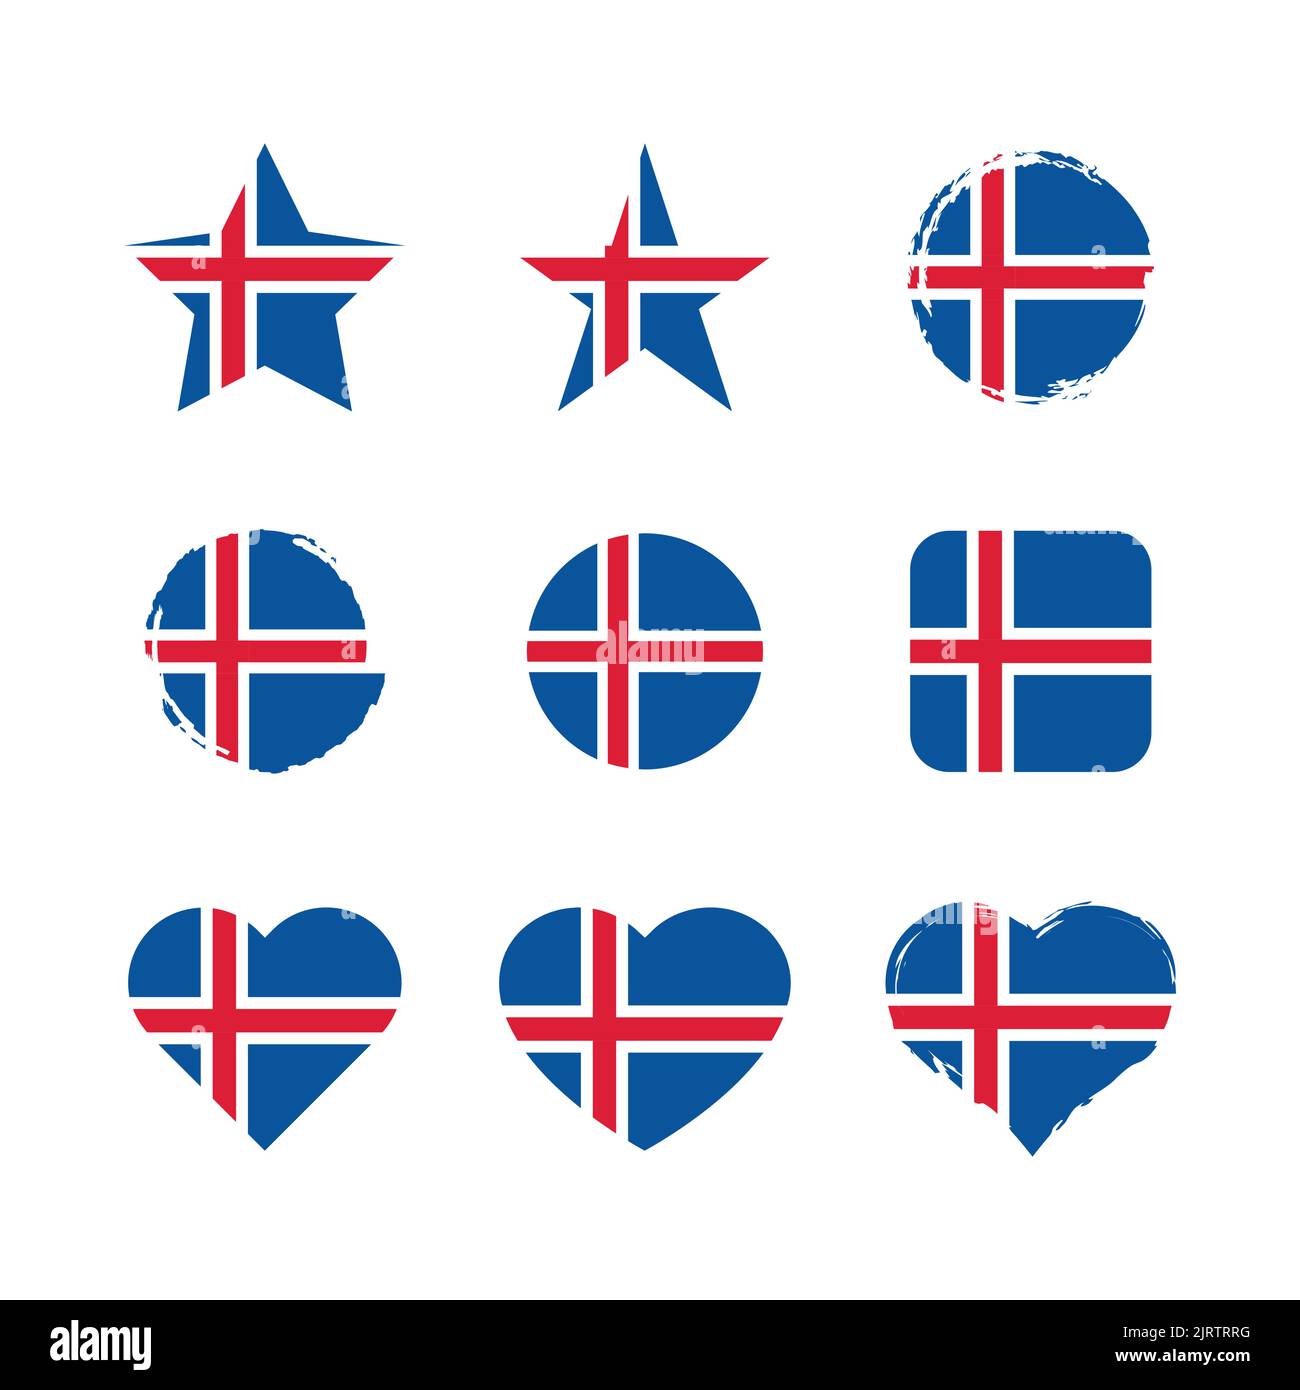 Iceland Vector Circle and Heart flag set. Bandiere di bollo con spazzola a secco islandese e effetto grunge. Illustrazione Vettoriale